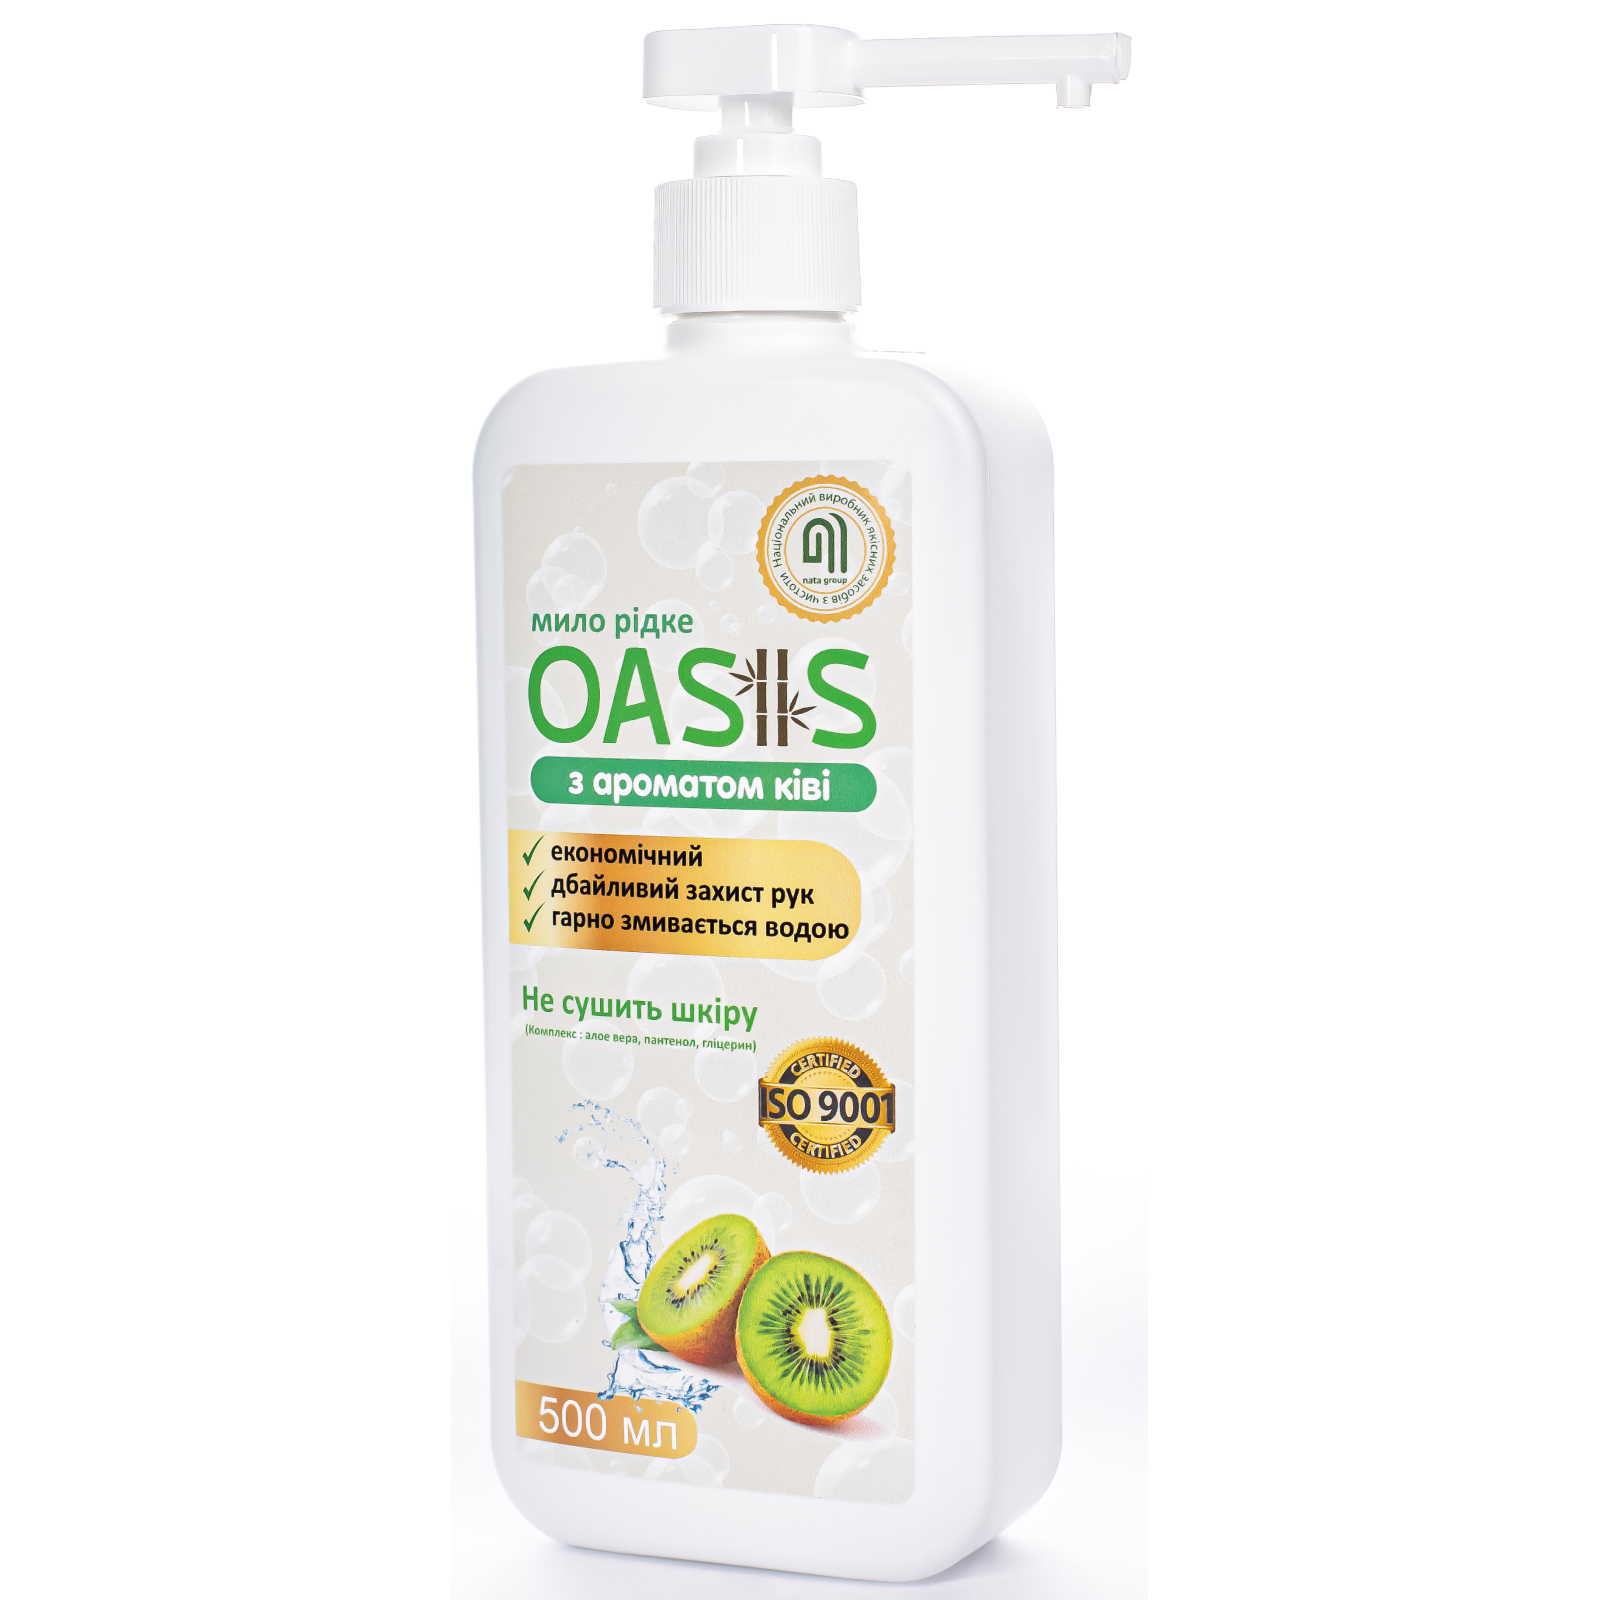 Жидкое мыло Nata Group Oasis С ароматом киви 1000 мл (4823112601141) изображение 2